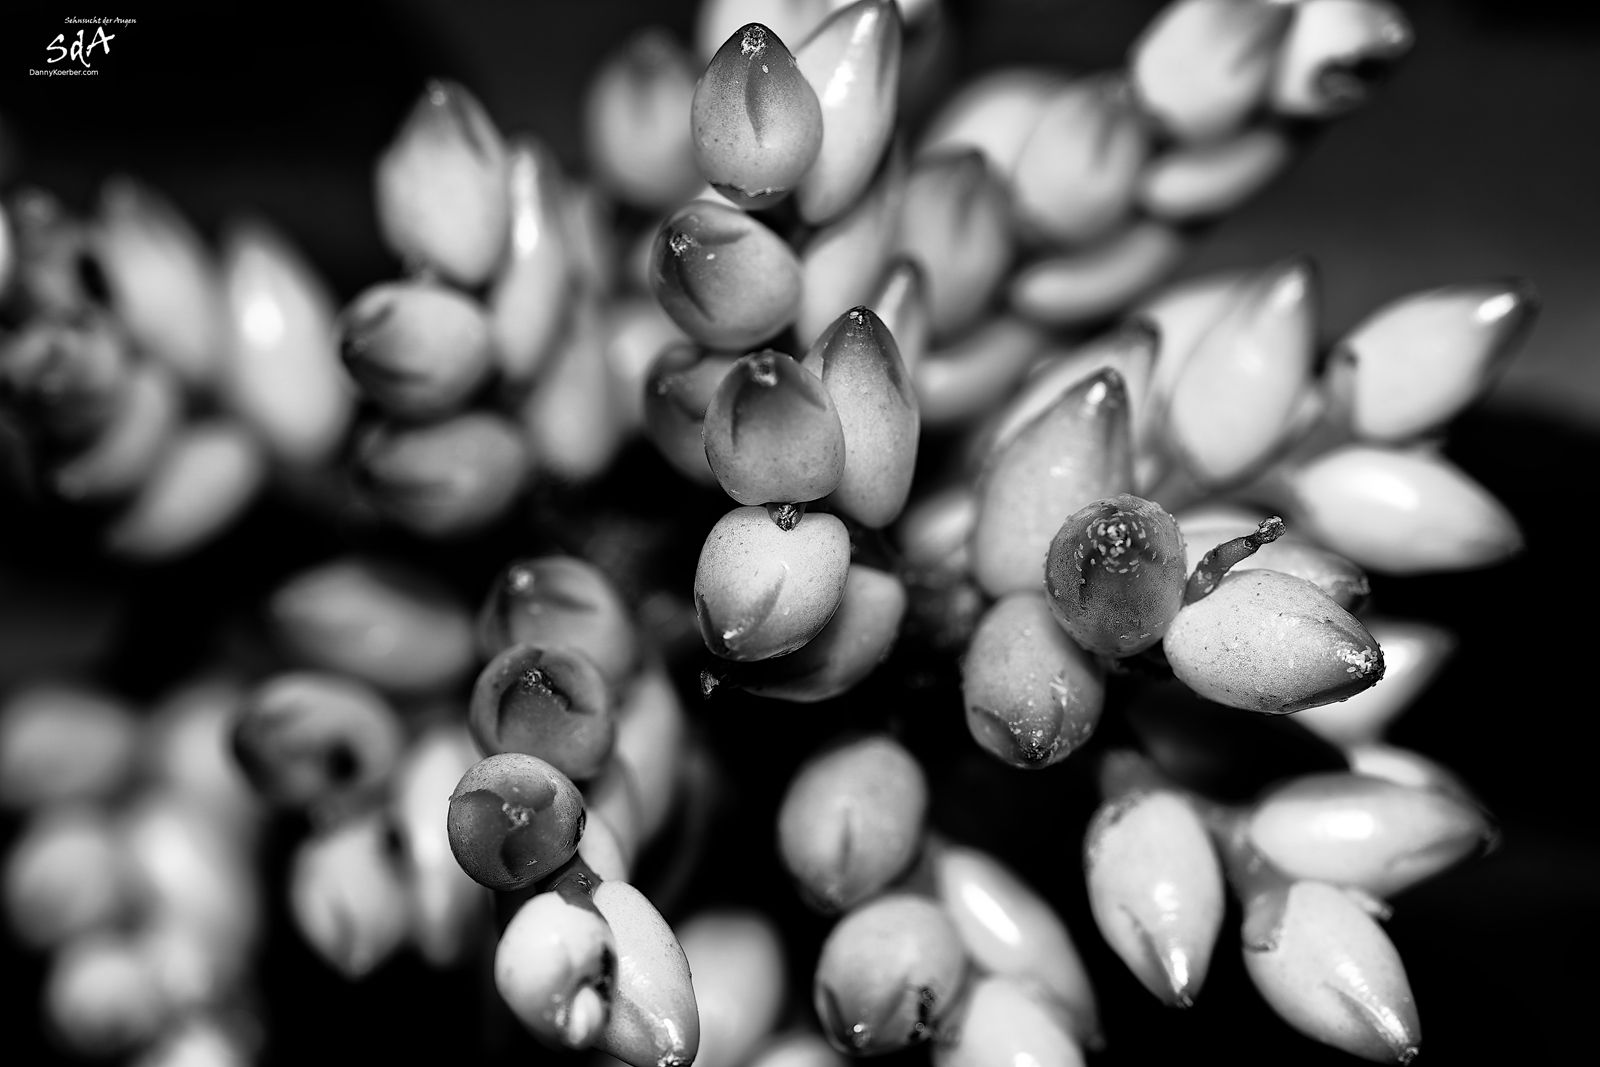 Kaktusblüten in schwarz weiß, fotografiert für Pflanzen von Danny Koerber für Sehnsucht der Augen.